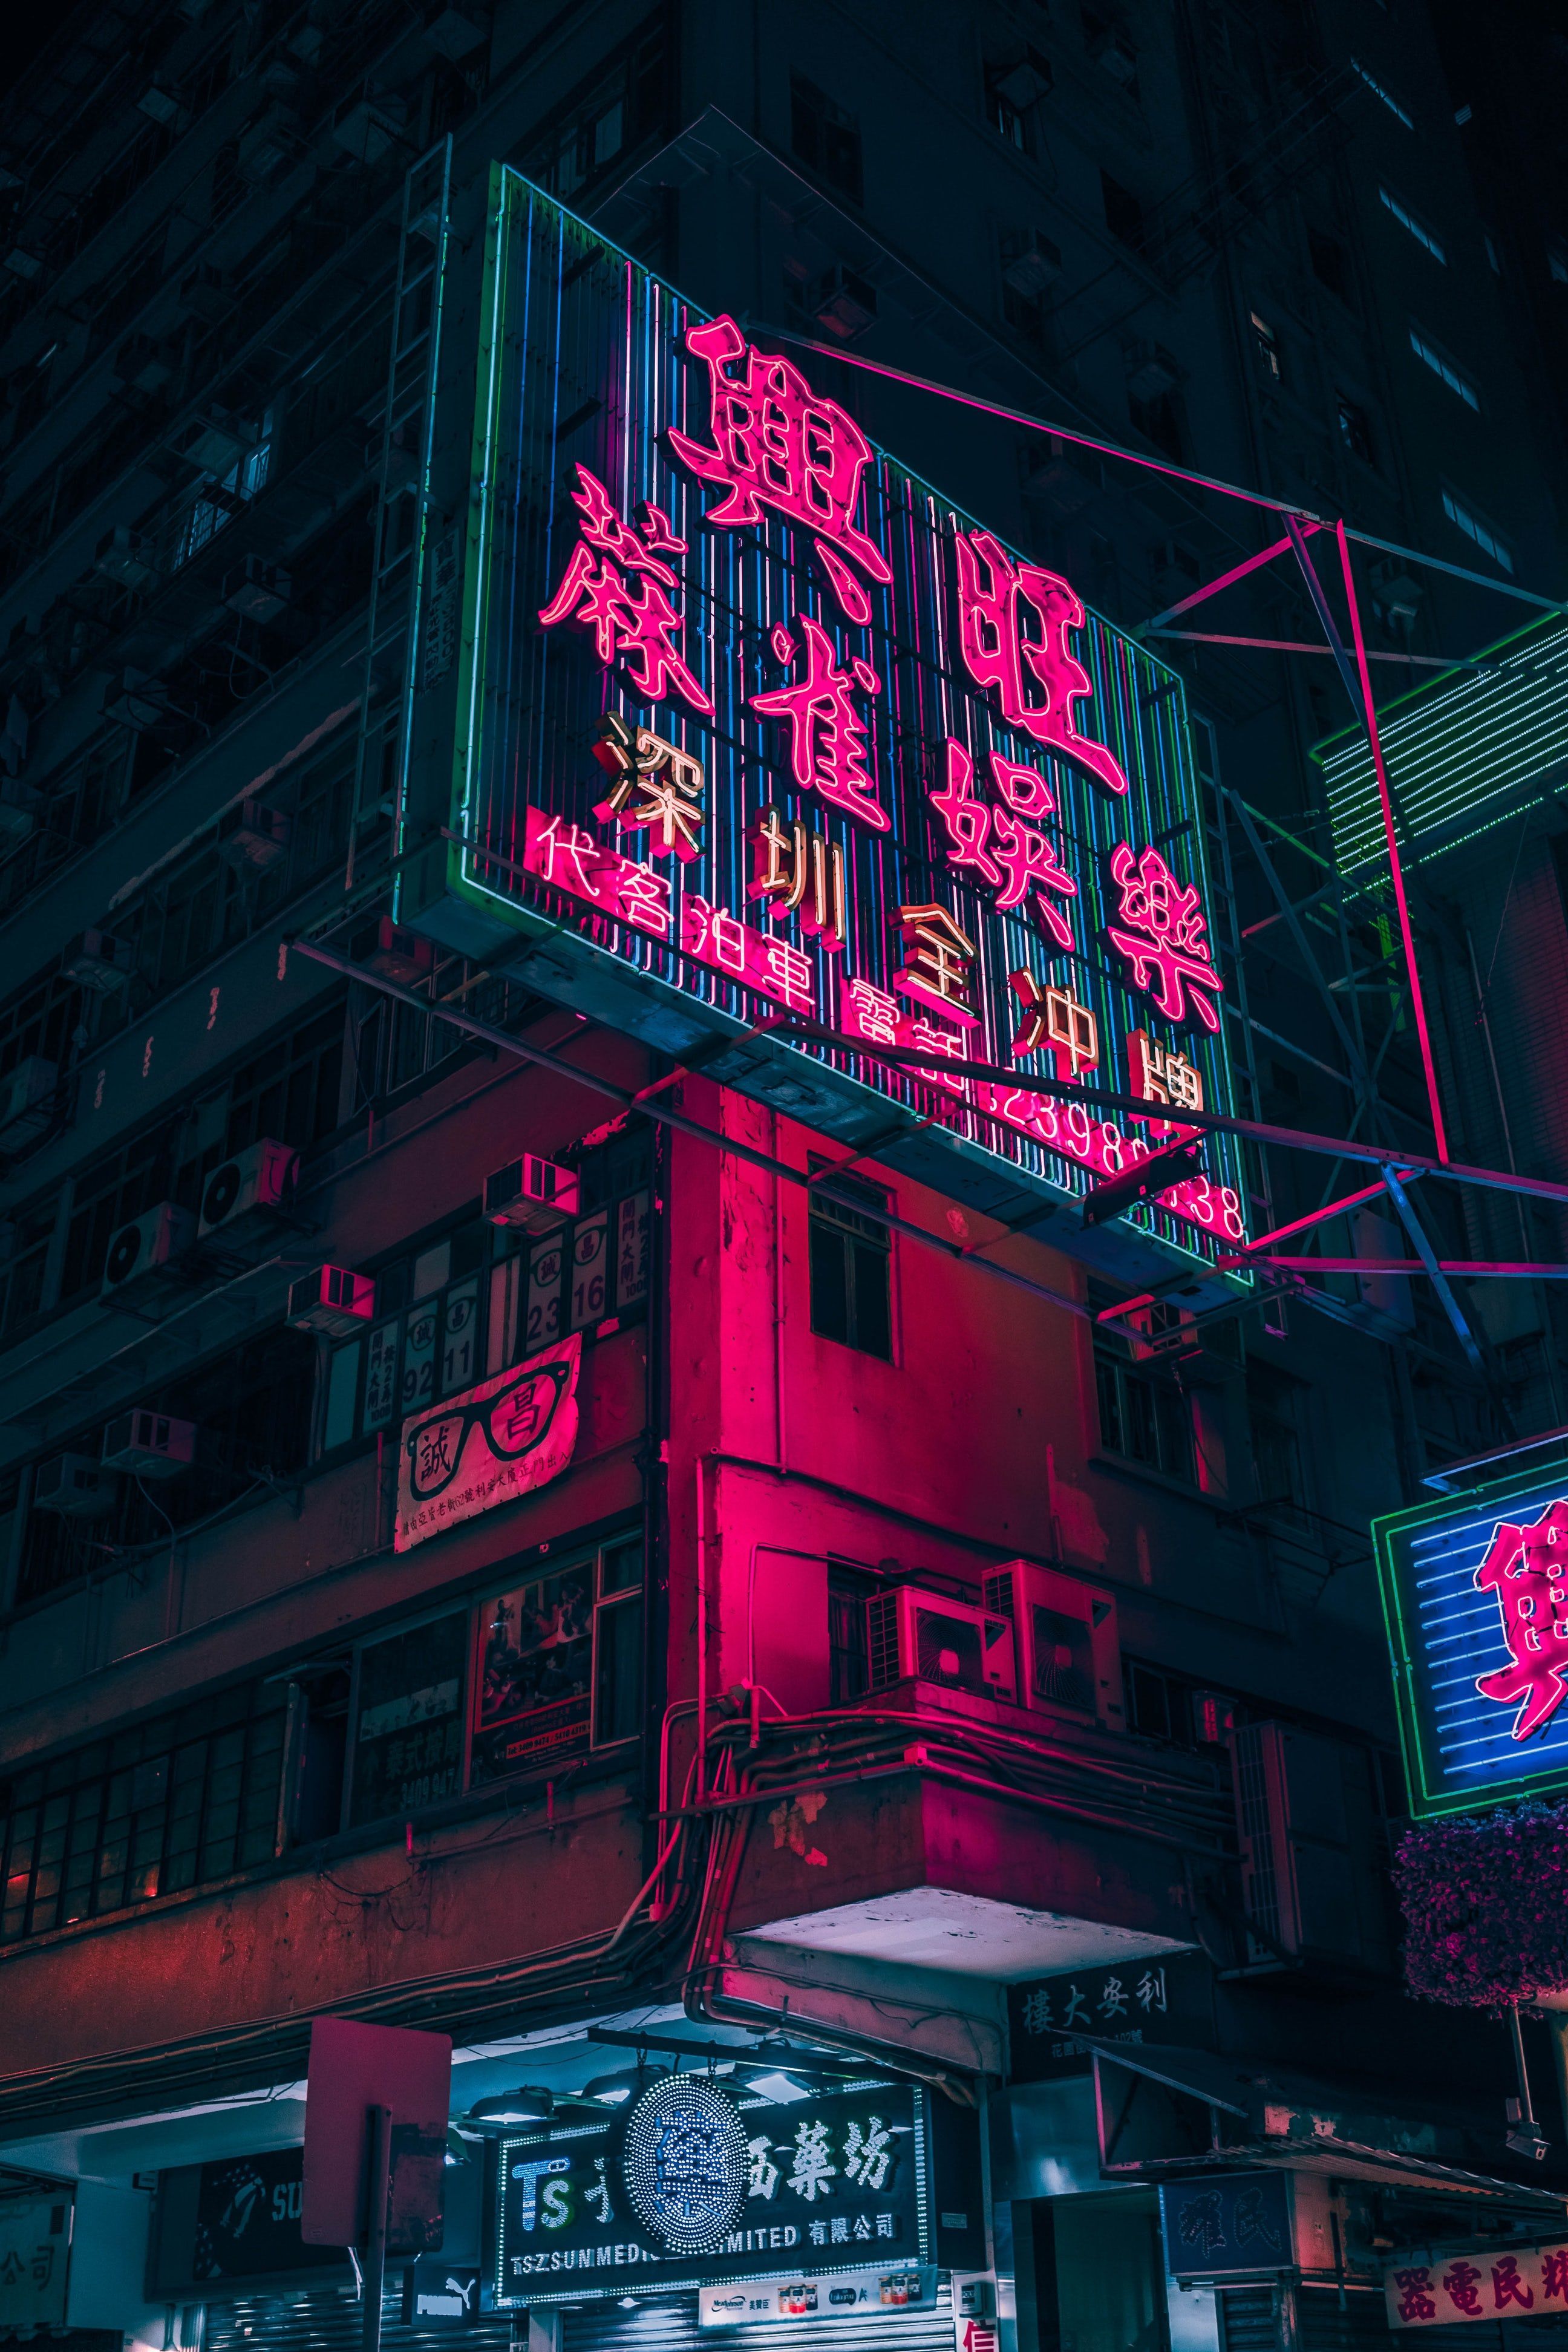 A neon sign in an asian city - HD, Cyberpunk